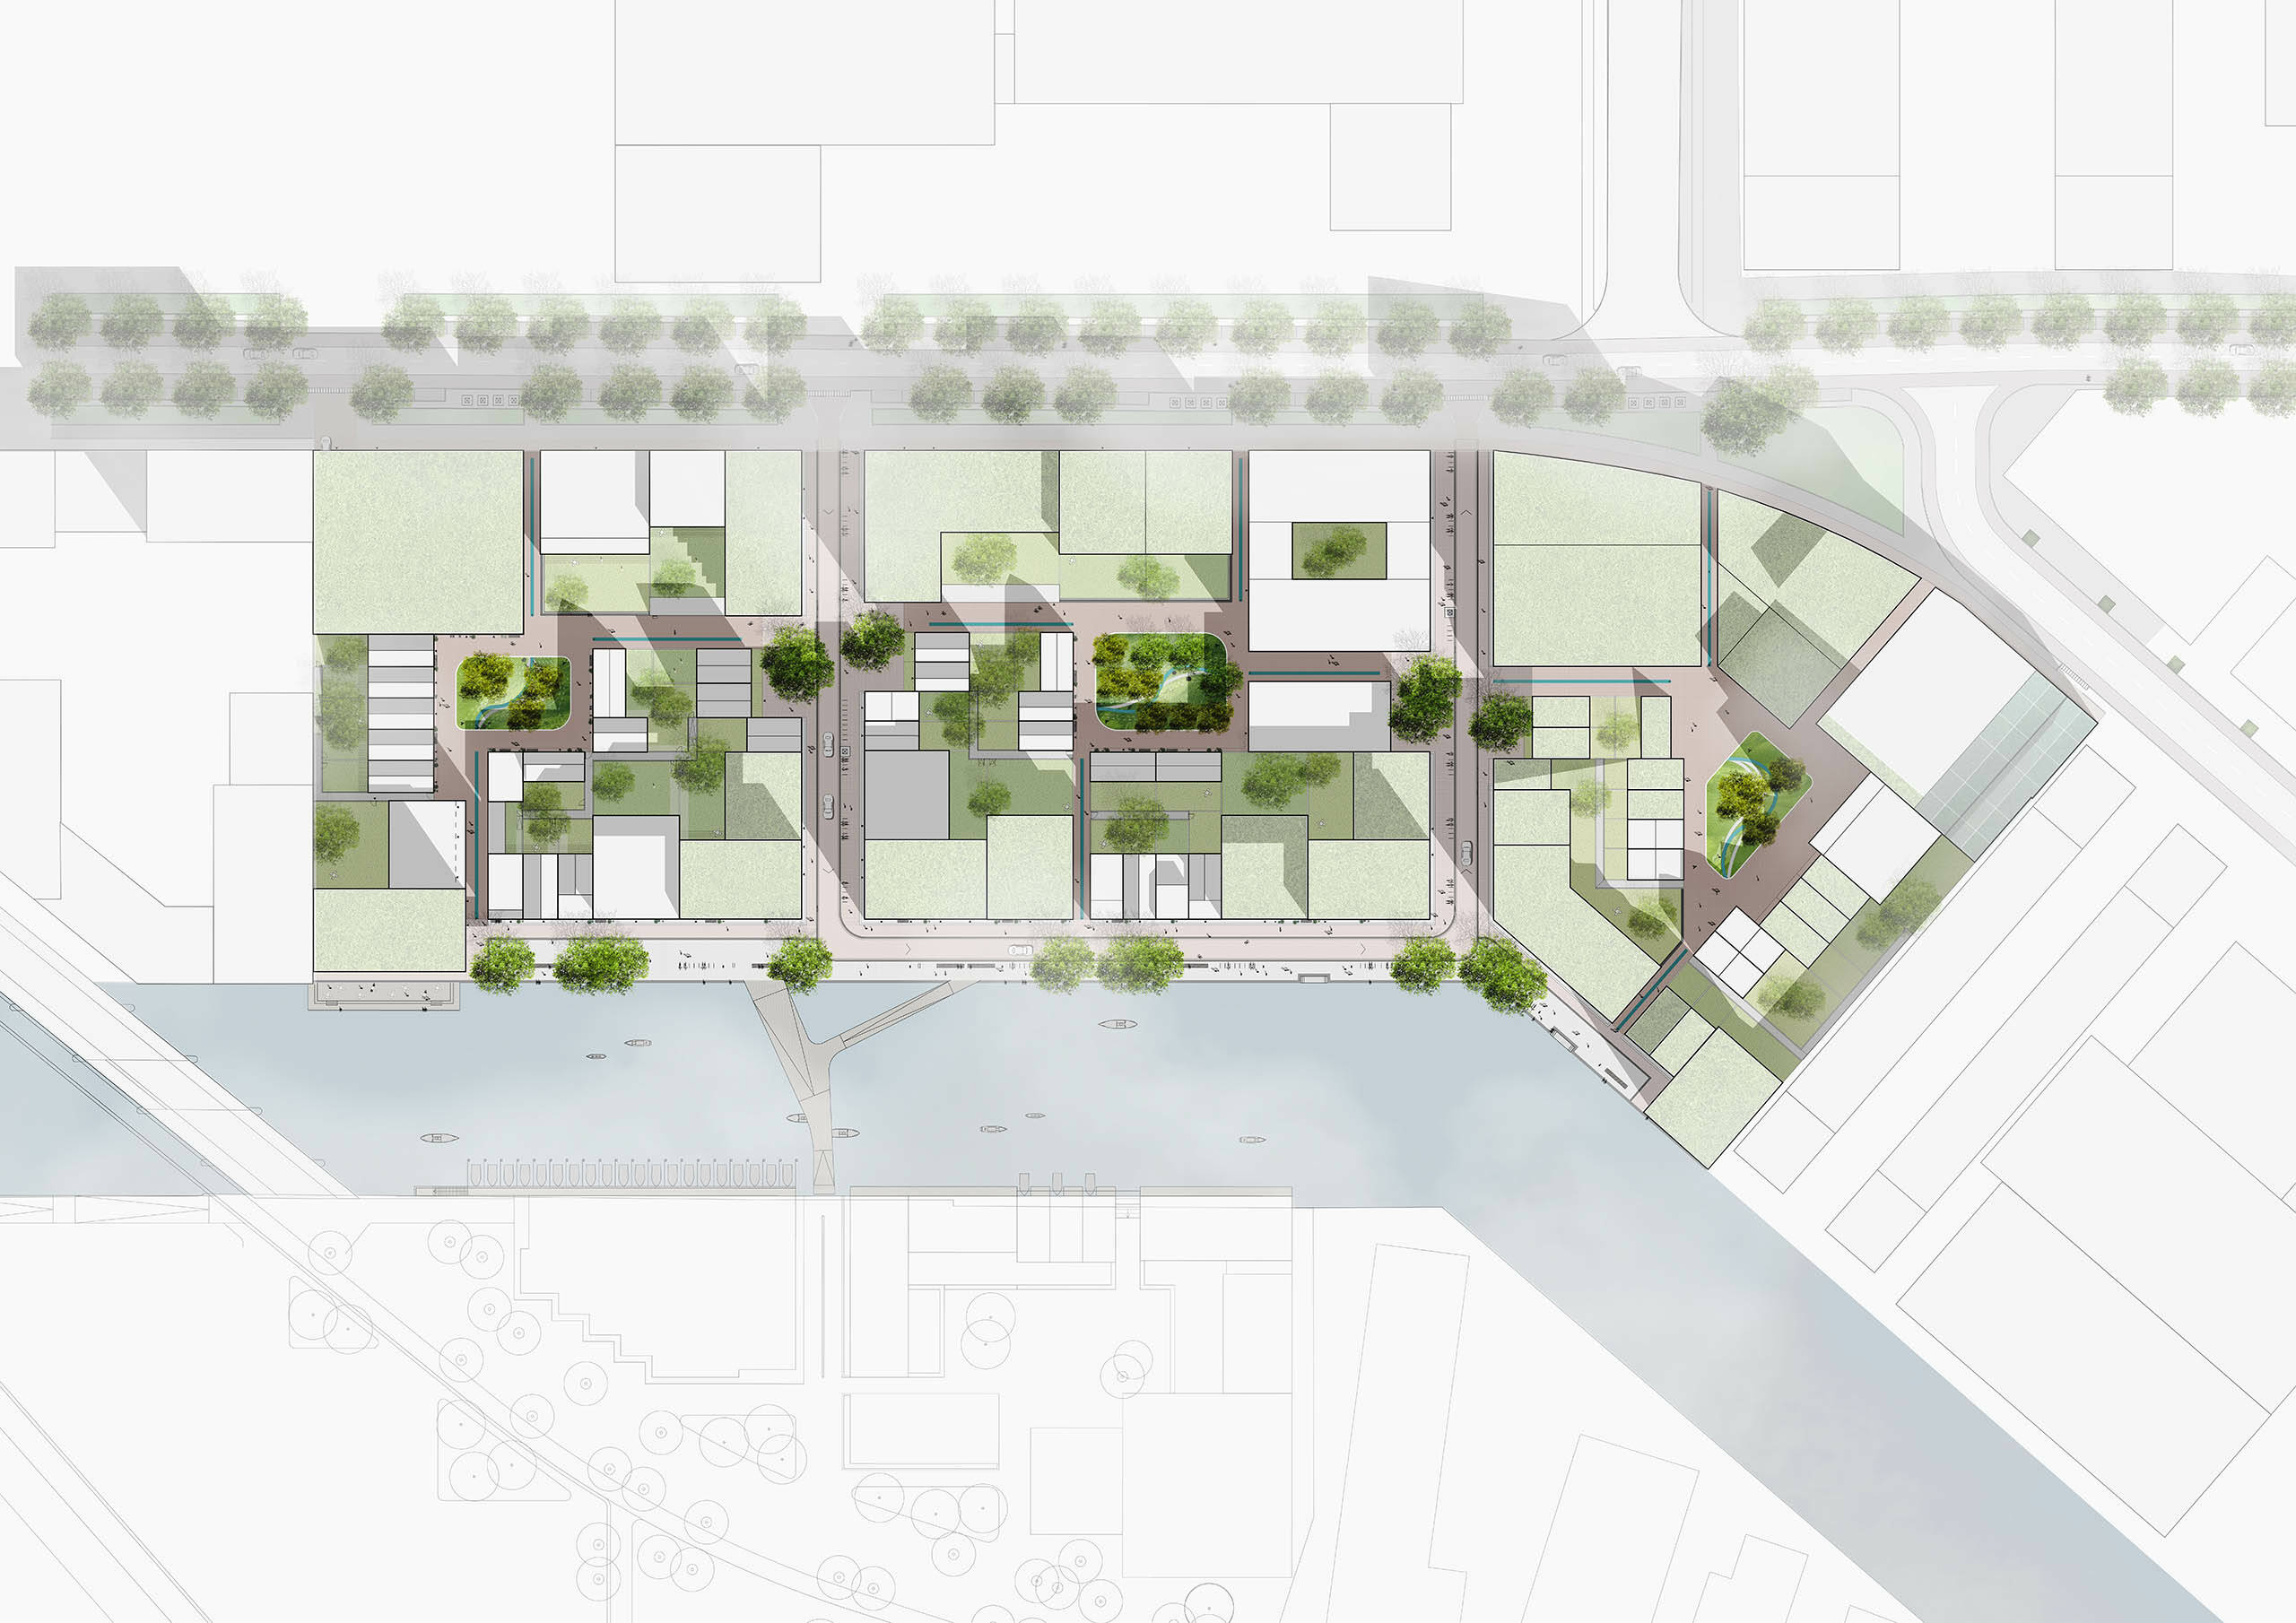 Getekend bovenaanzicht van Cityplot Buiksloterham, waarop de drie plots met groene binnenpleinen duidelijk te zien zijn